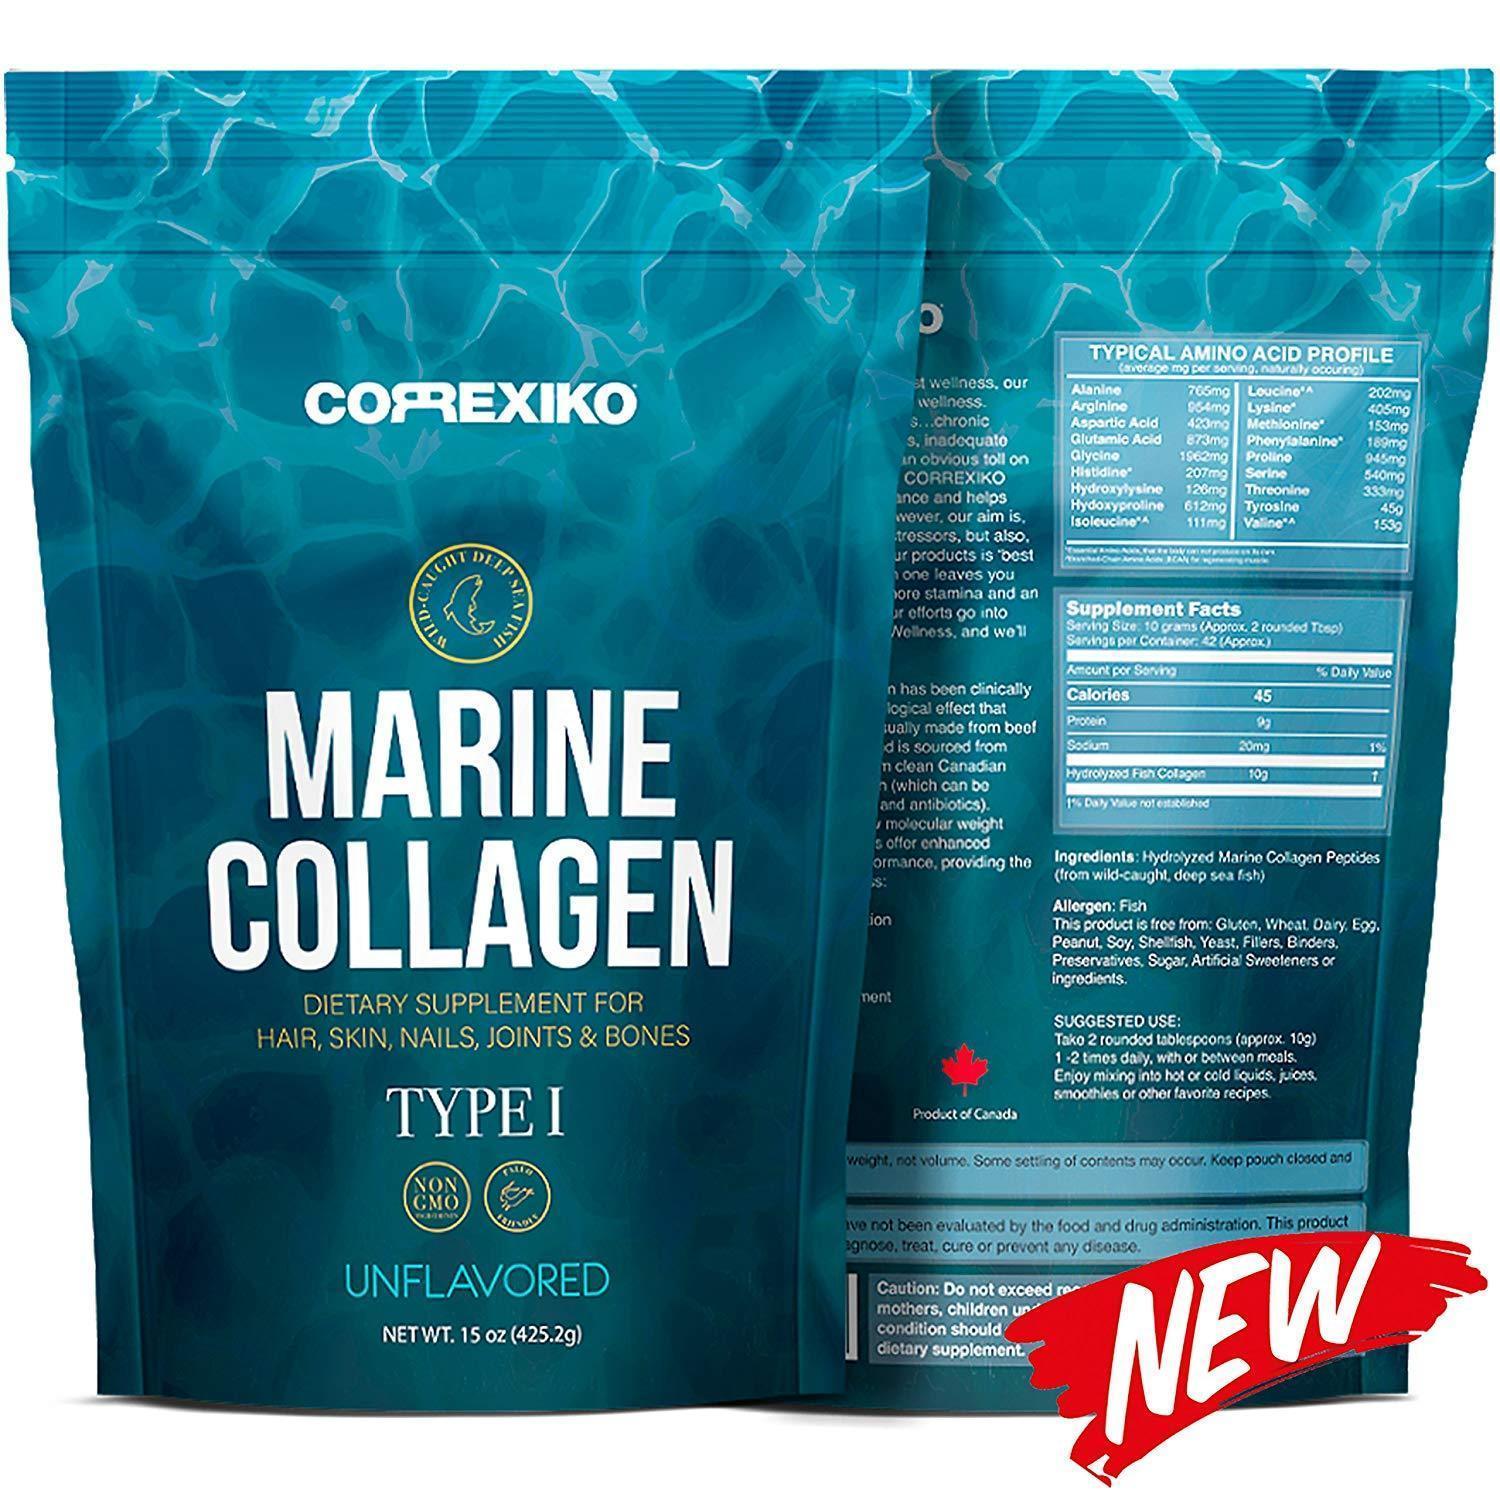 Wild Marine Collagen Powder